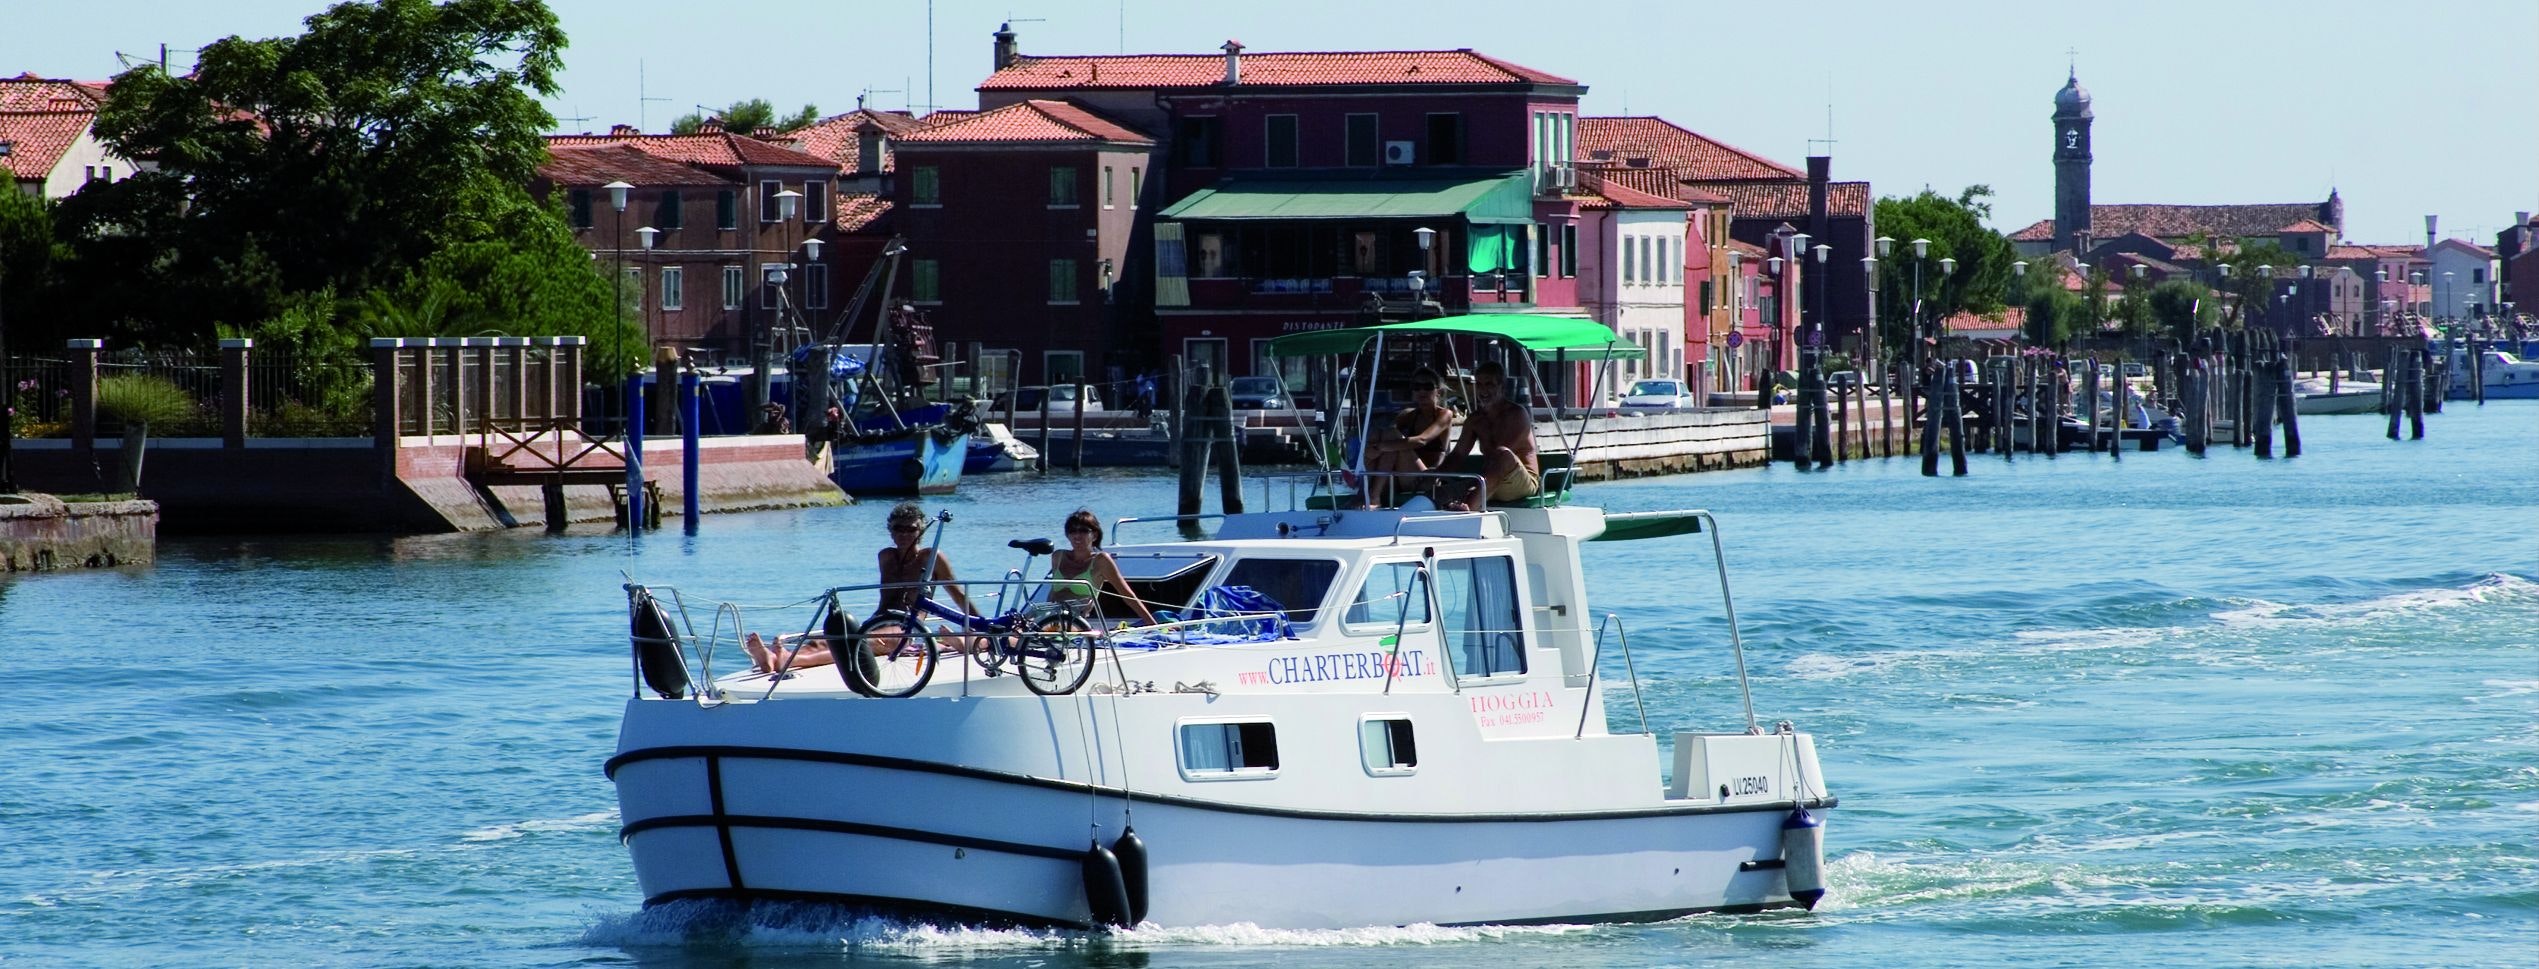 Oameni aflati la bordul unei barci-case din Laguna Venețiană